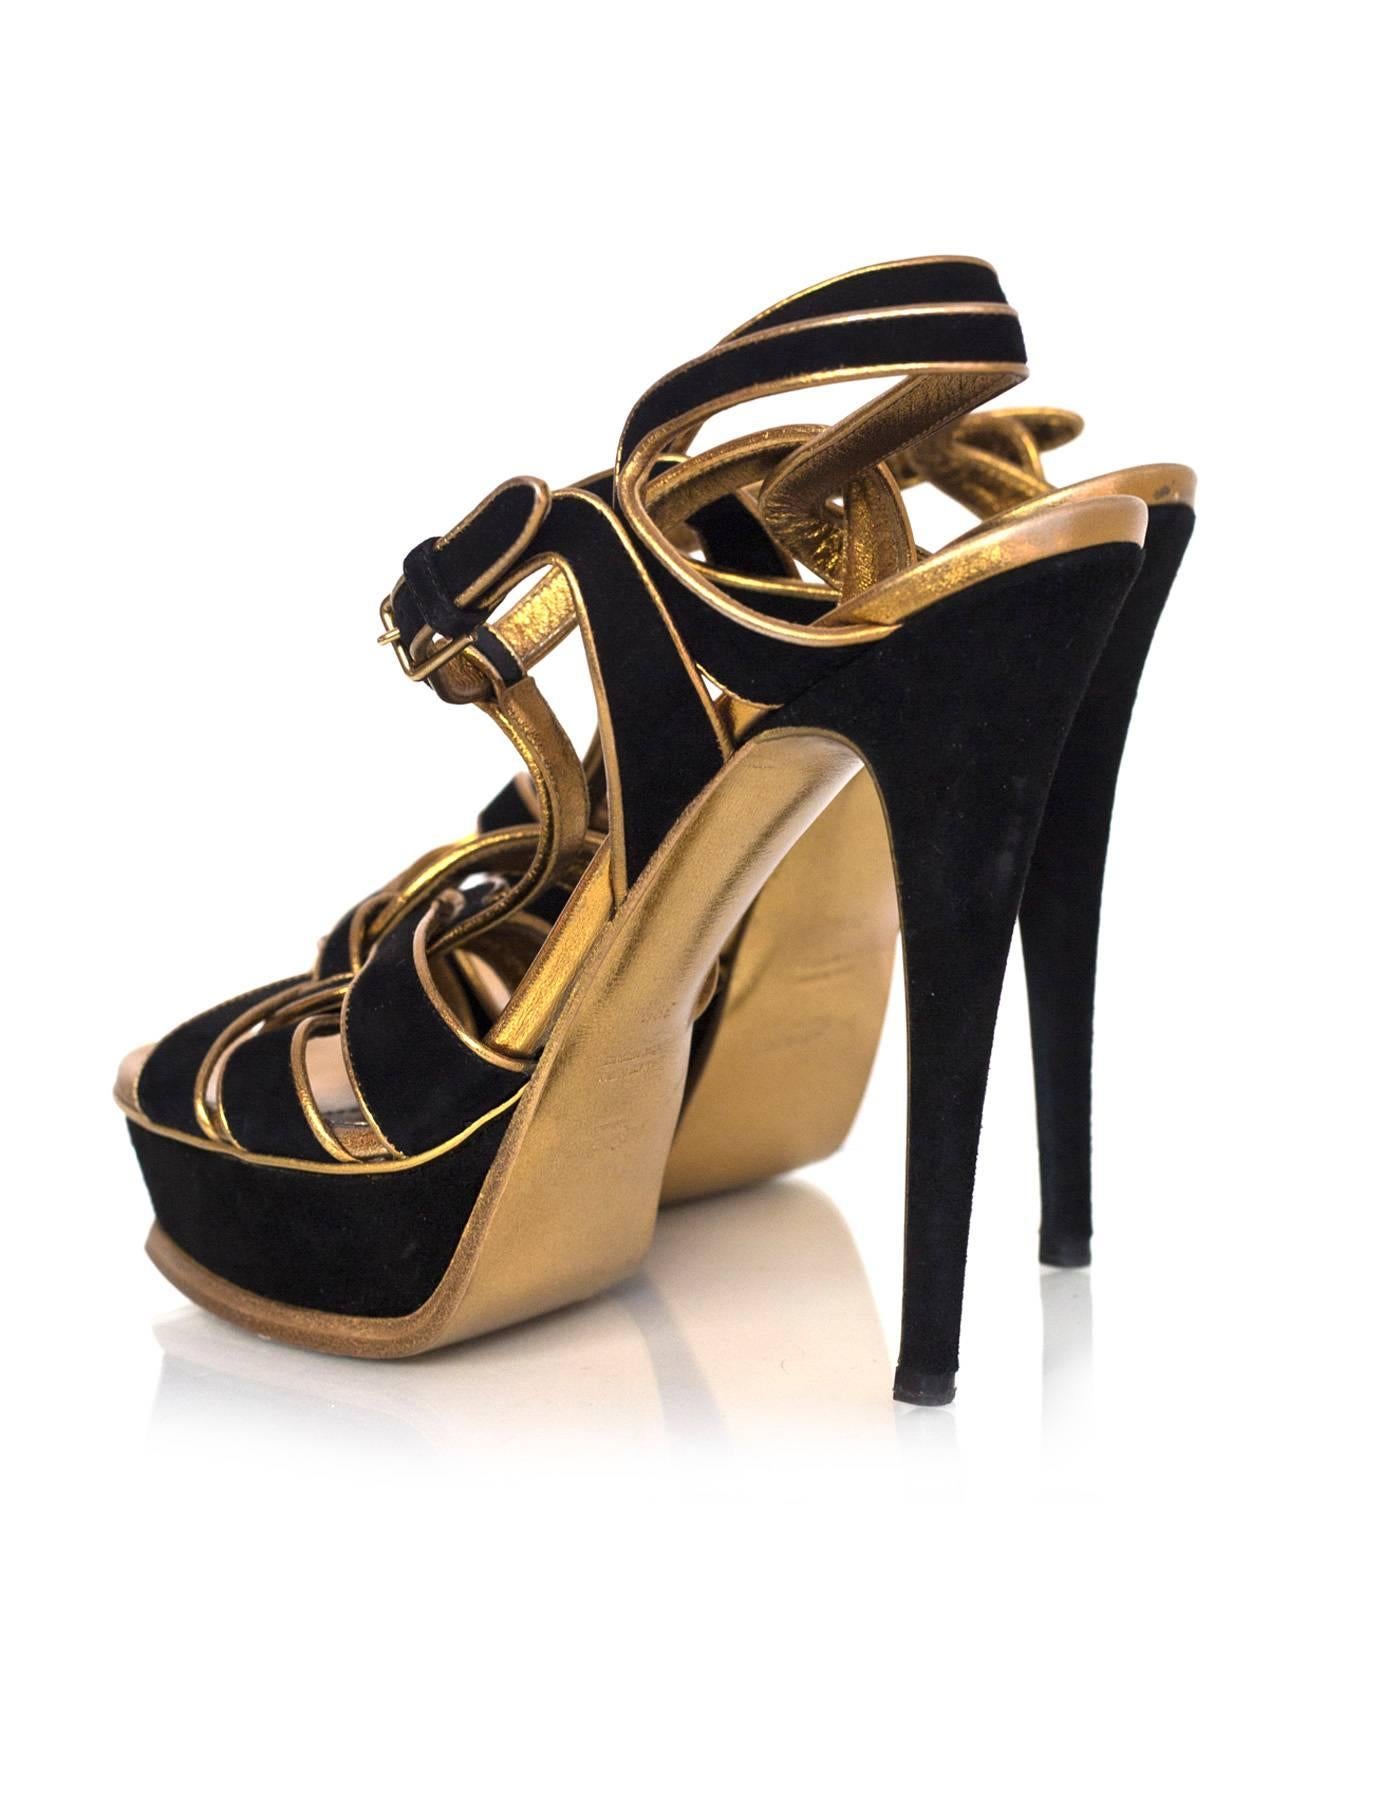 Women's Yves Saint Laurent Black and Gold SuedeTribute 105 Sandals Sz 39.5